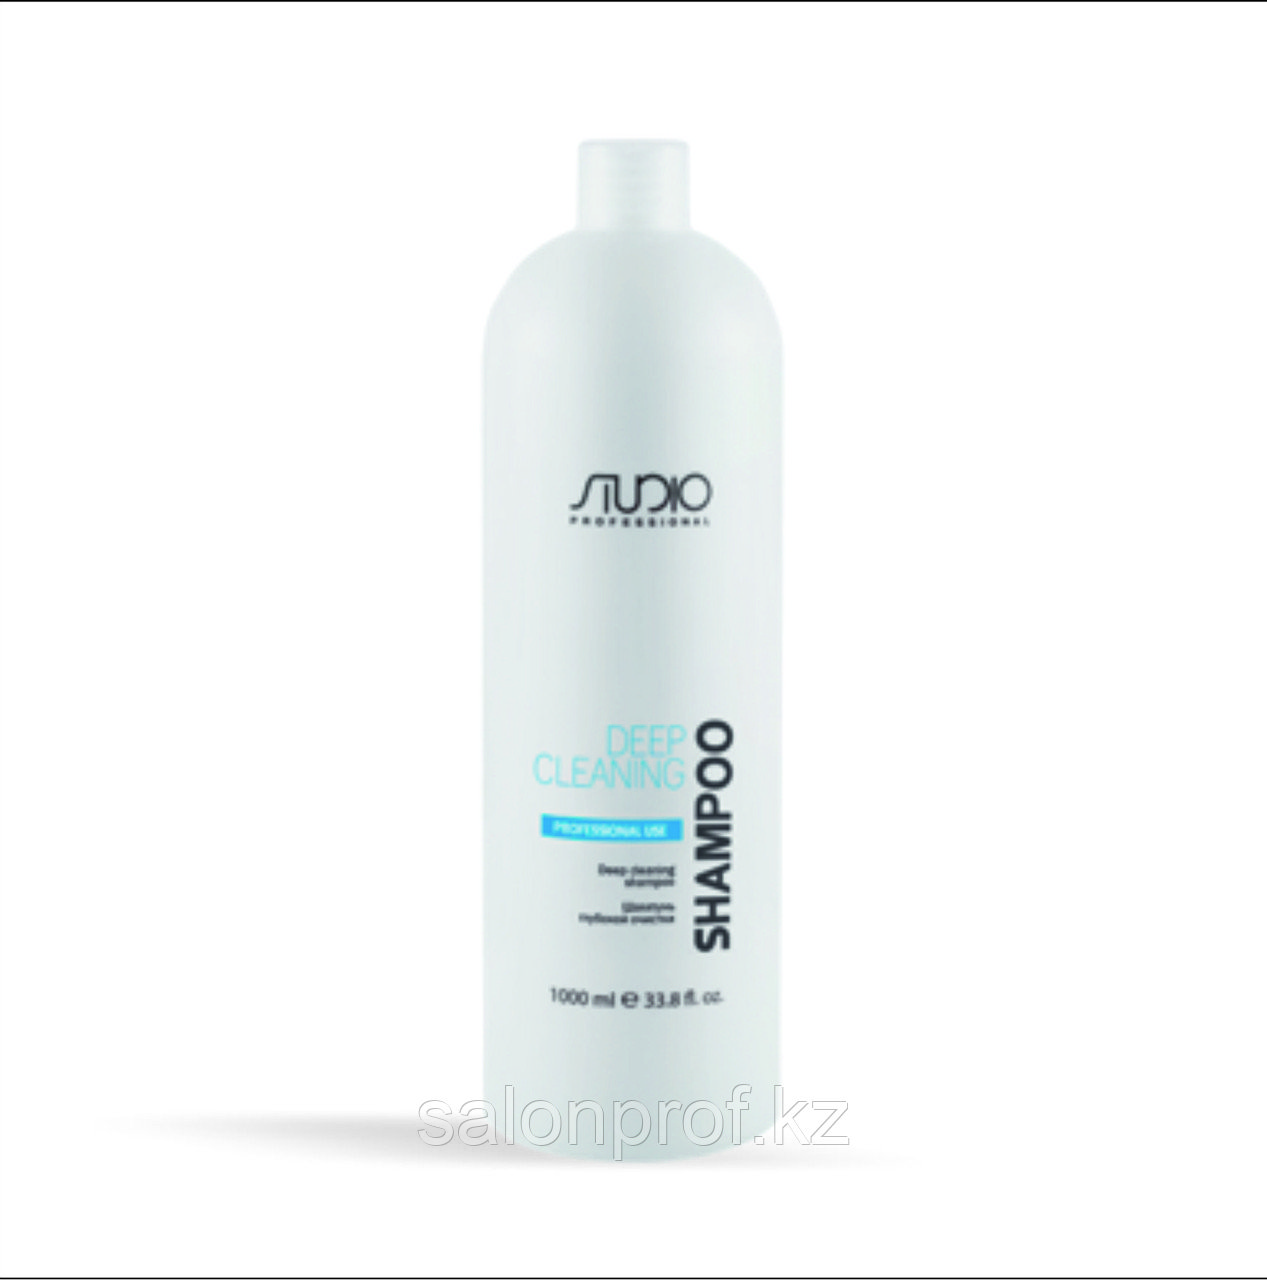 Шампунь STUDIO для глубокой очистки для всех типов волос 1000 мл №68735